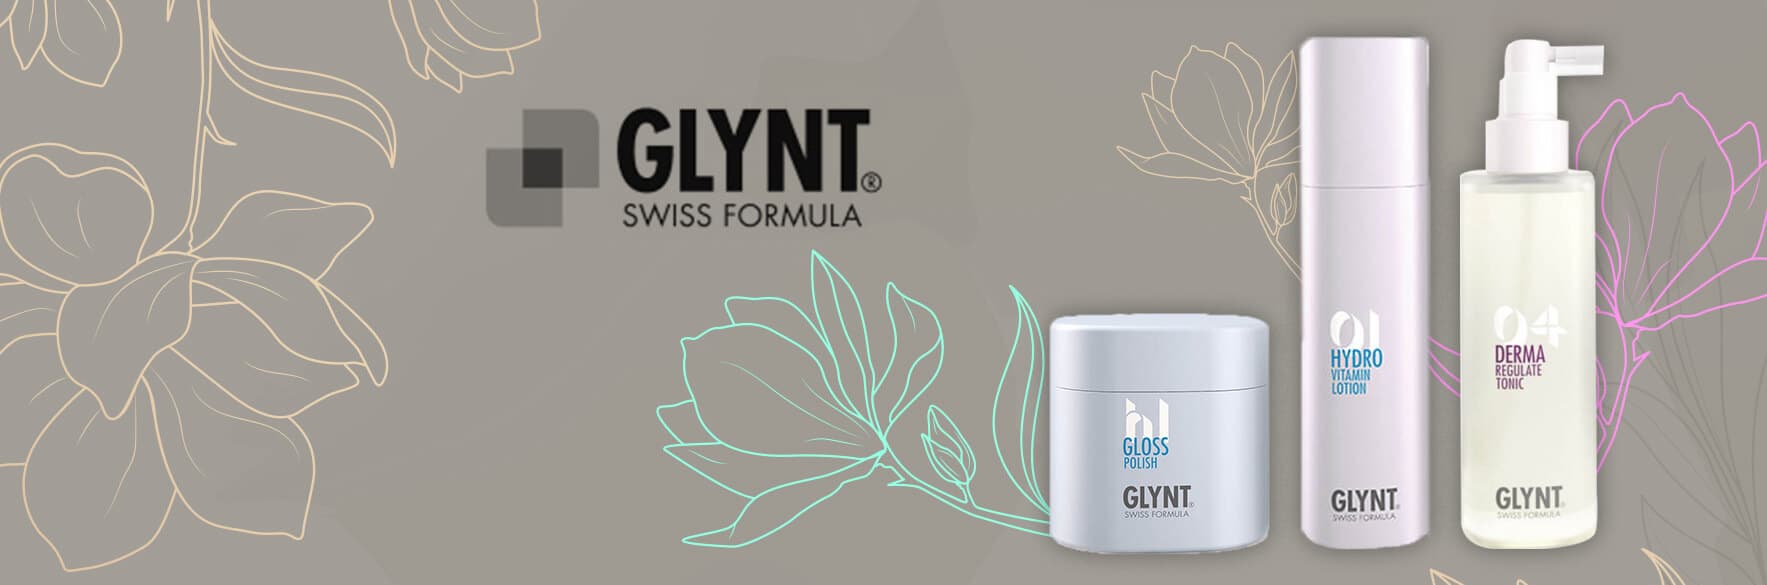 گلینت | خرید محصولات گلینت GLYNT